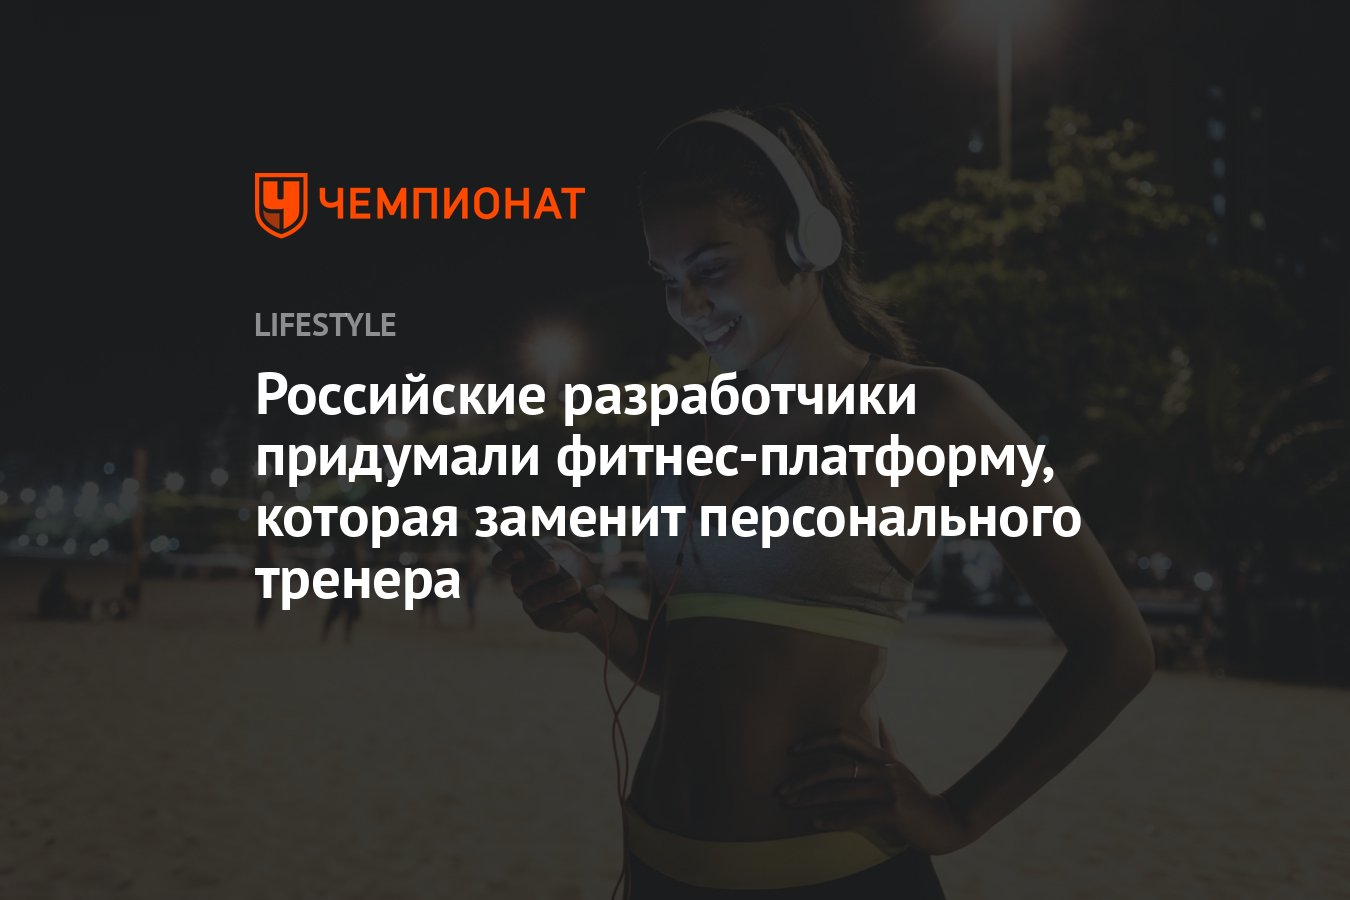 Виртуальный тренер: фитнес-платформа от российских разработчиков обещает  быстрые результаты - Чемпионат